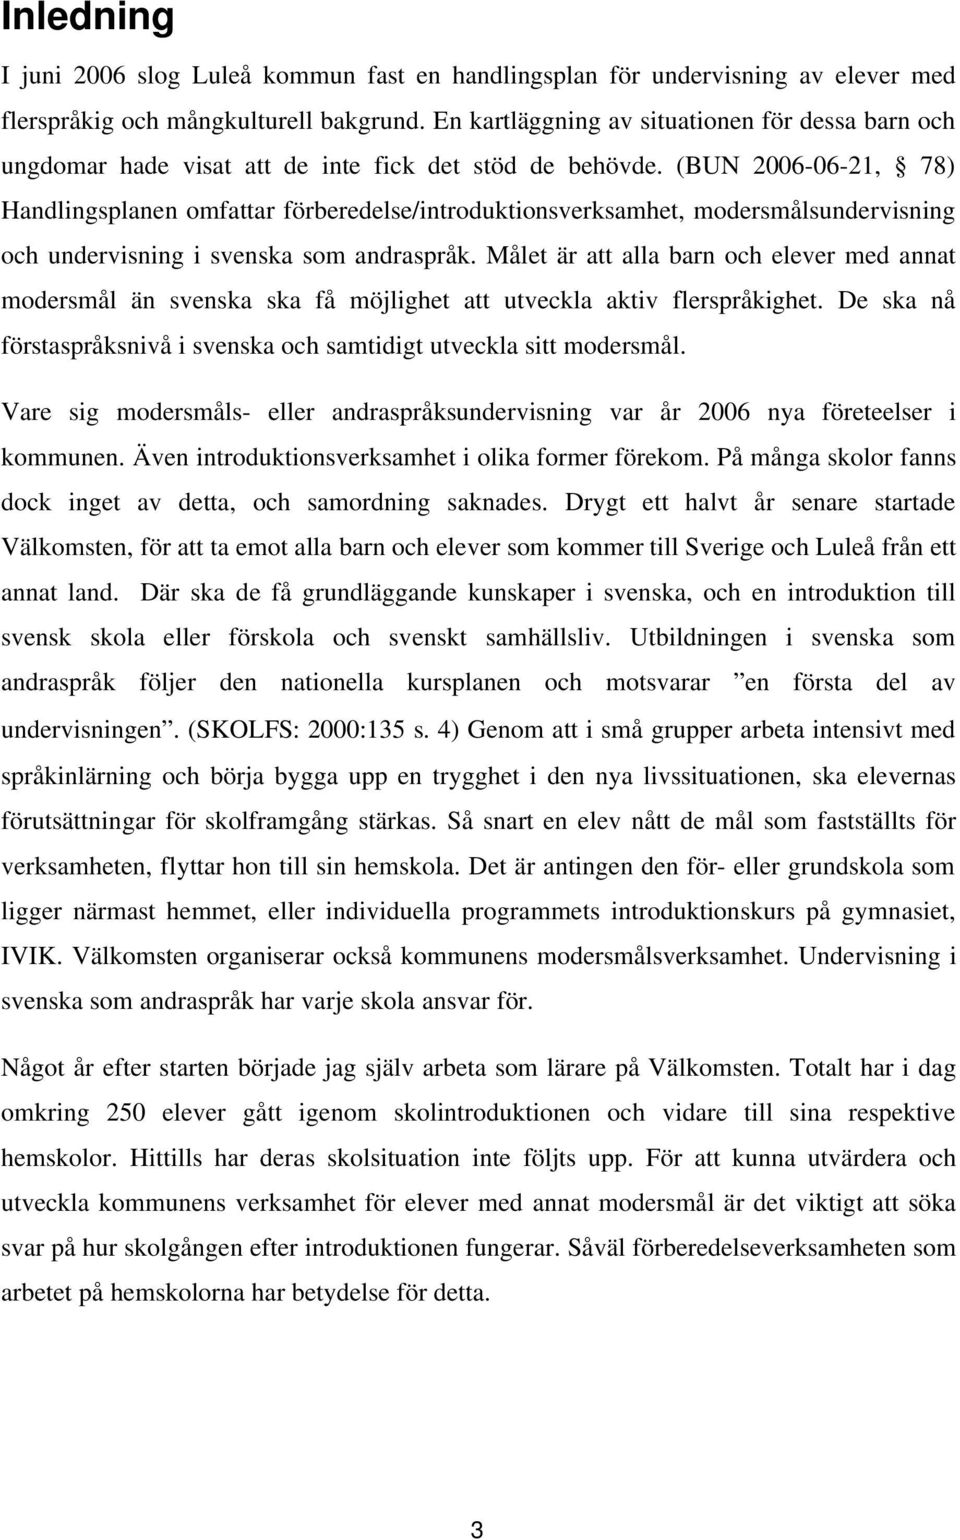 (BUN 2006-06-21, 78) Handlingsplanen omfattar förberedelse/introduktionsverksamhet, modersmålsundervisning och undervisning i svenska som andraspråk.